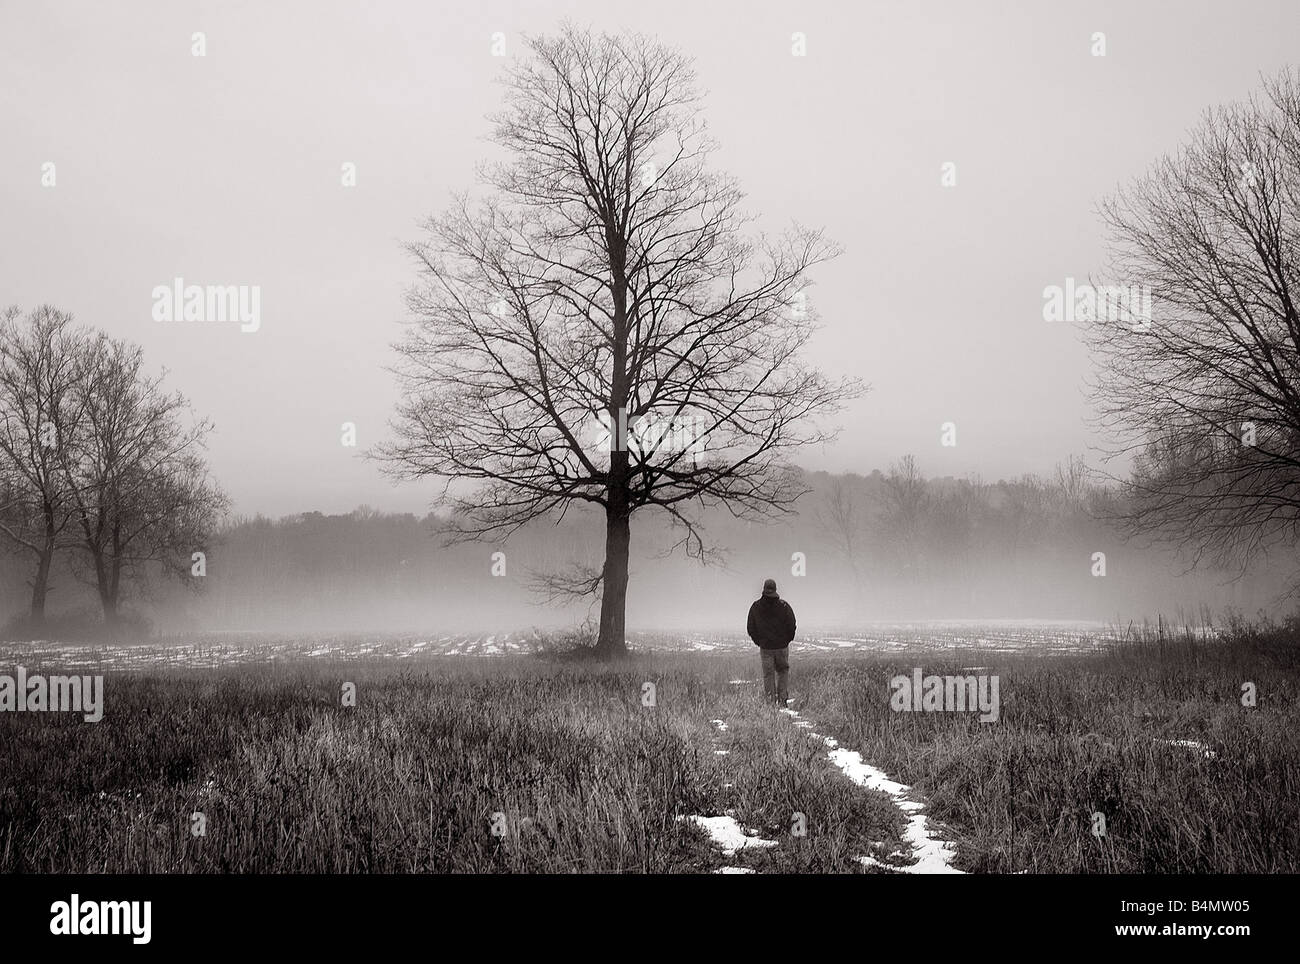 Immagine da sogno di un ombroso uomo a camminare nella nebbia in prossimità di un grande albero Foto Stock